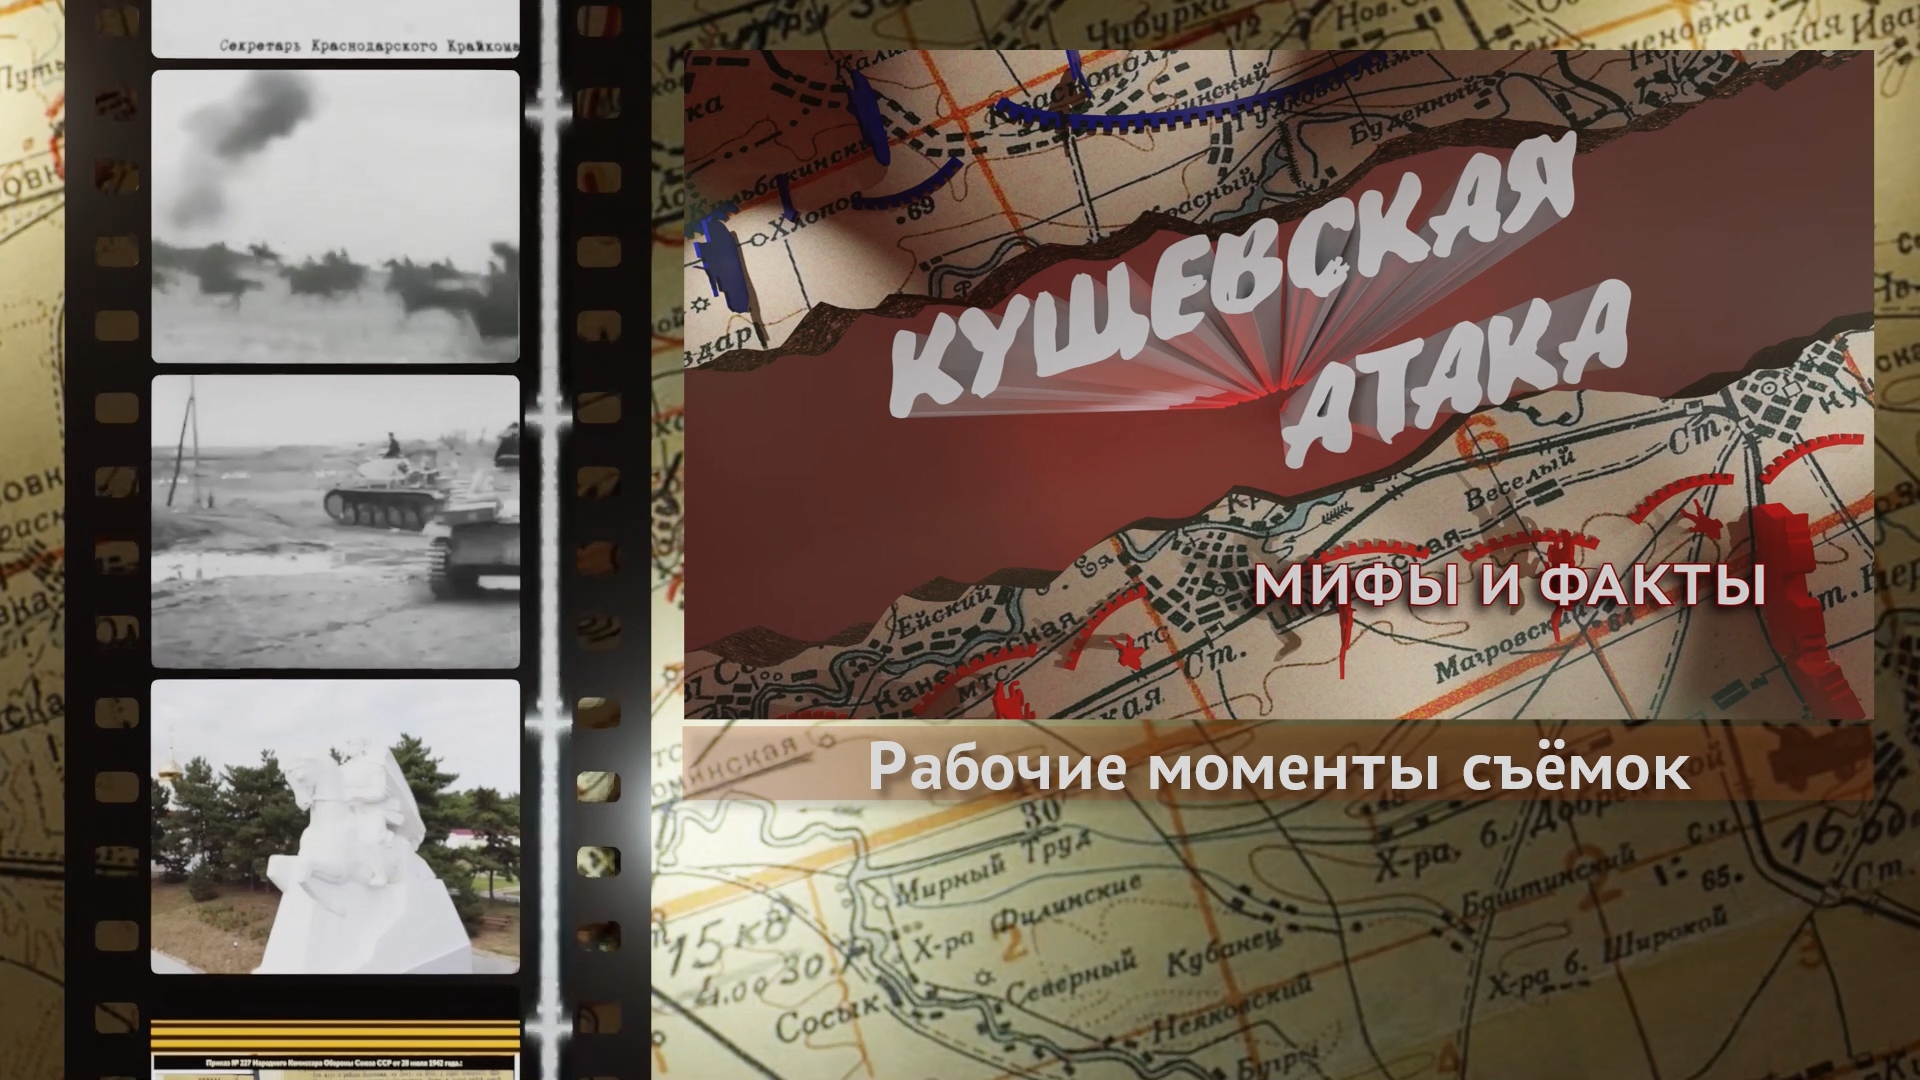 «Кущёвская атака. Мифы и факты» - рабочие моменты съёмок